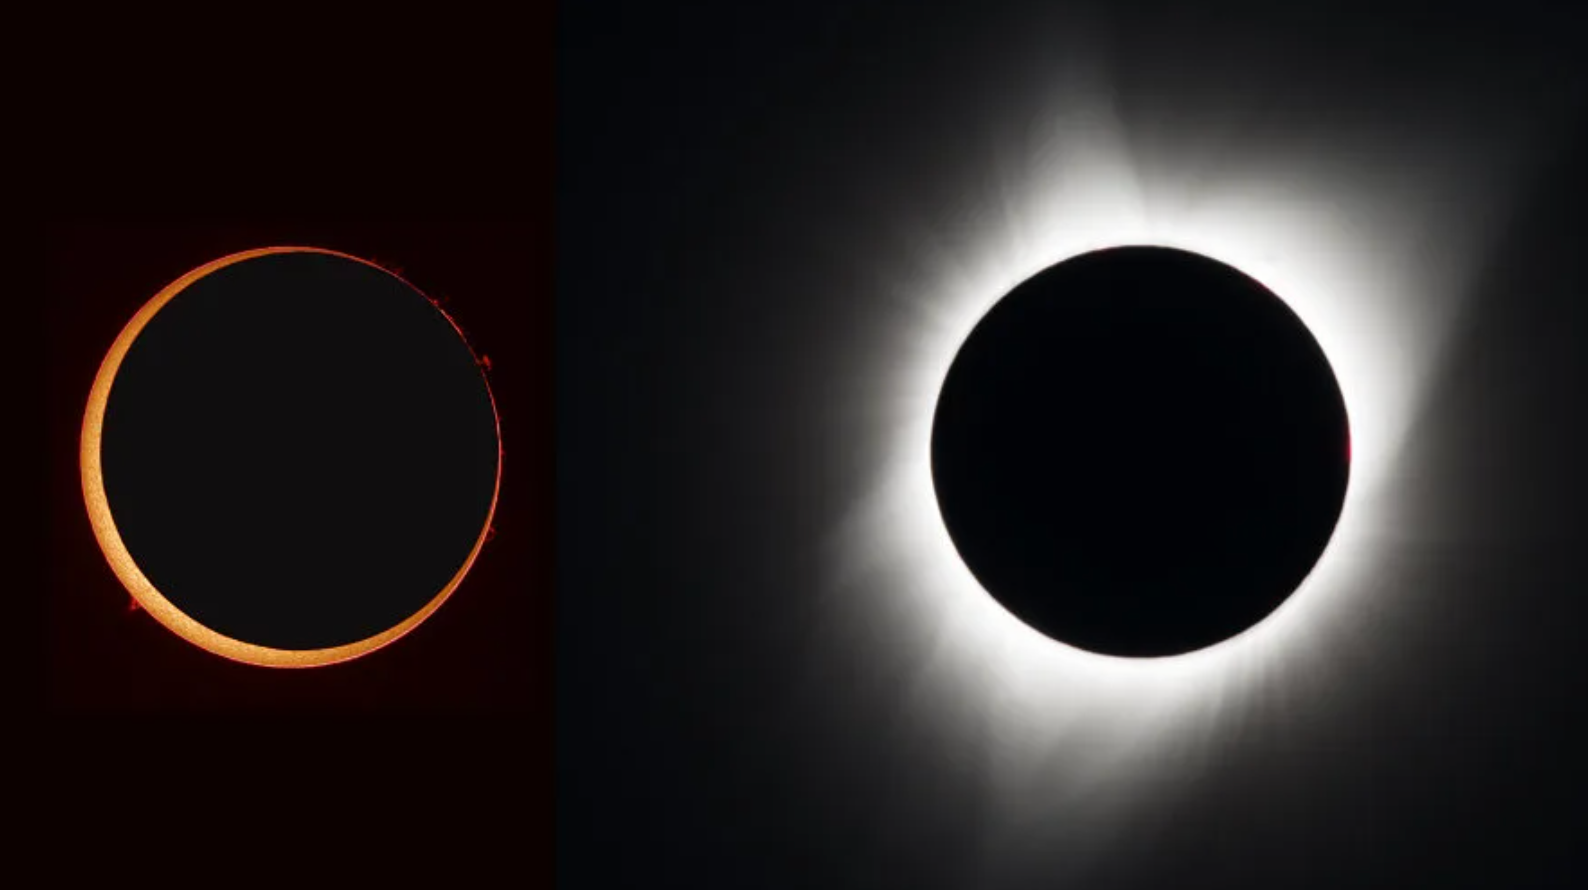 Fechas clave de los próximos eclipses solares que debes conocer